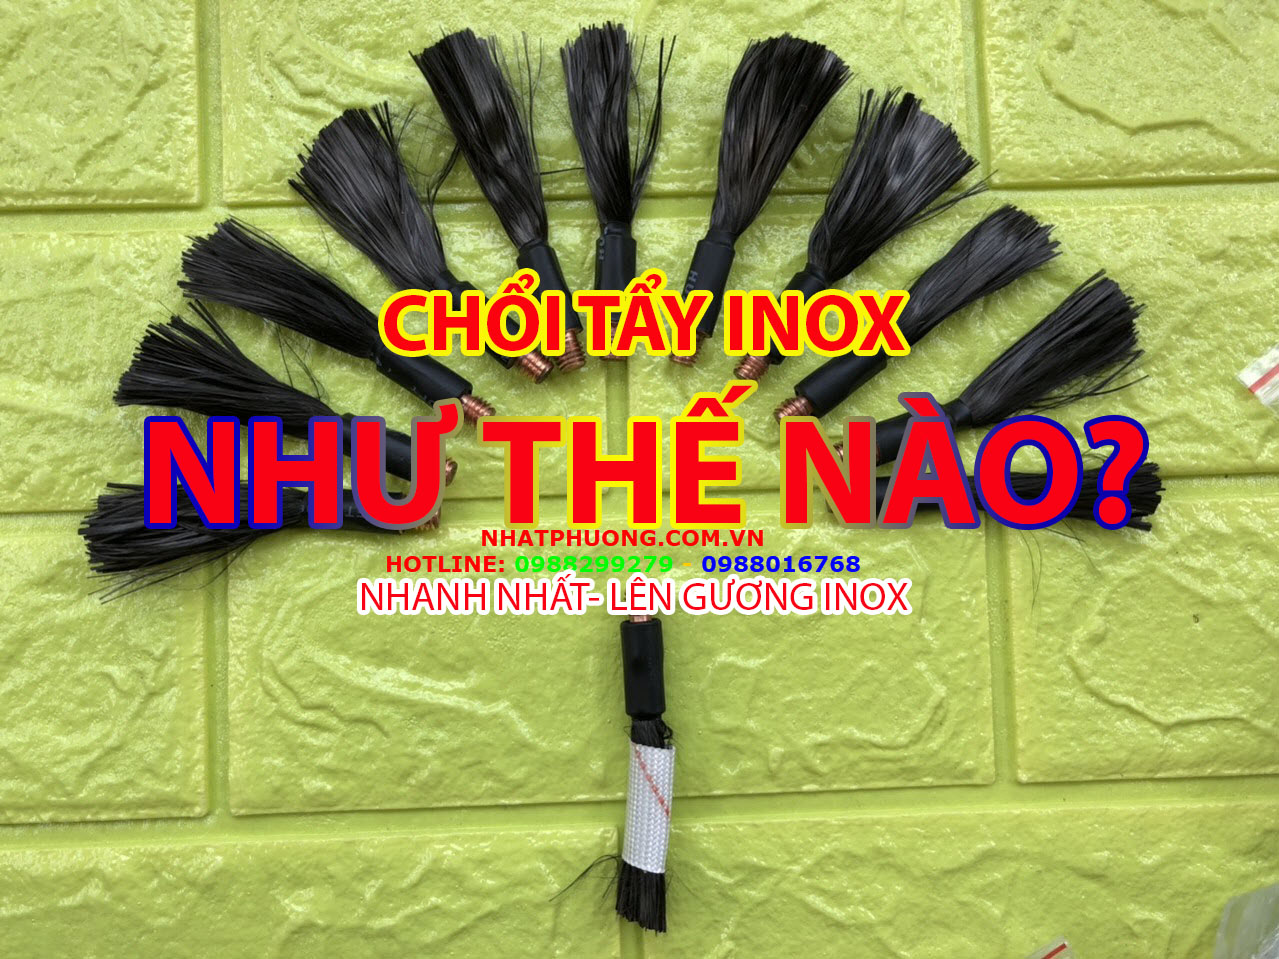 Chổi Tẩy Mối Hàn Inox, Chổi Điện Hóa Mối Hàn Inox- Tẩy được trên 6 tấn Inox, được hướng dẫn kinh nghiệm đánh bóng Inox 10 năm tại Nhật